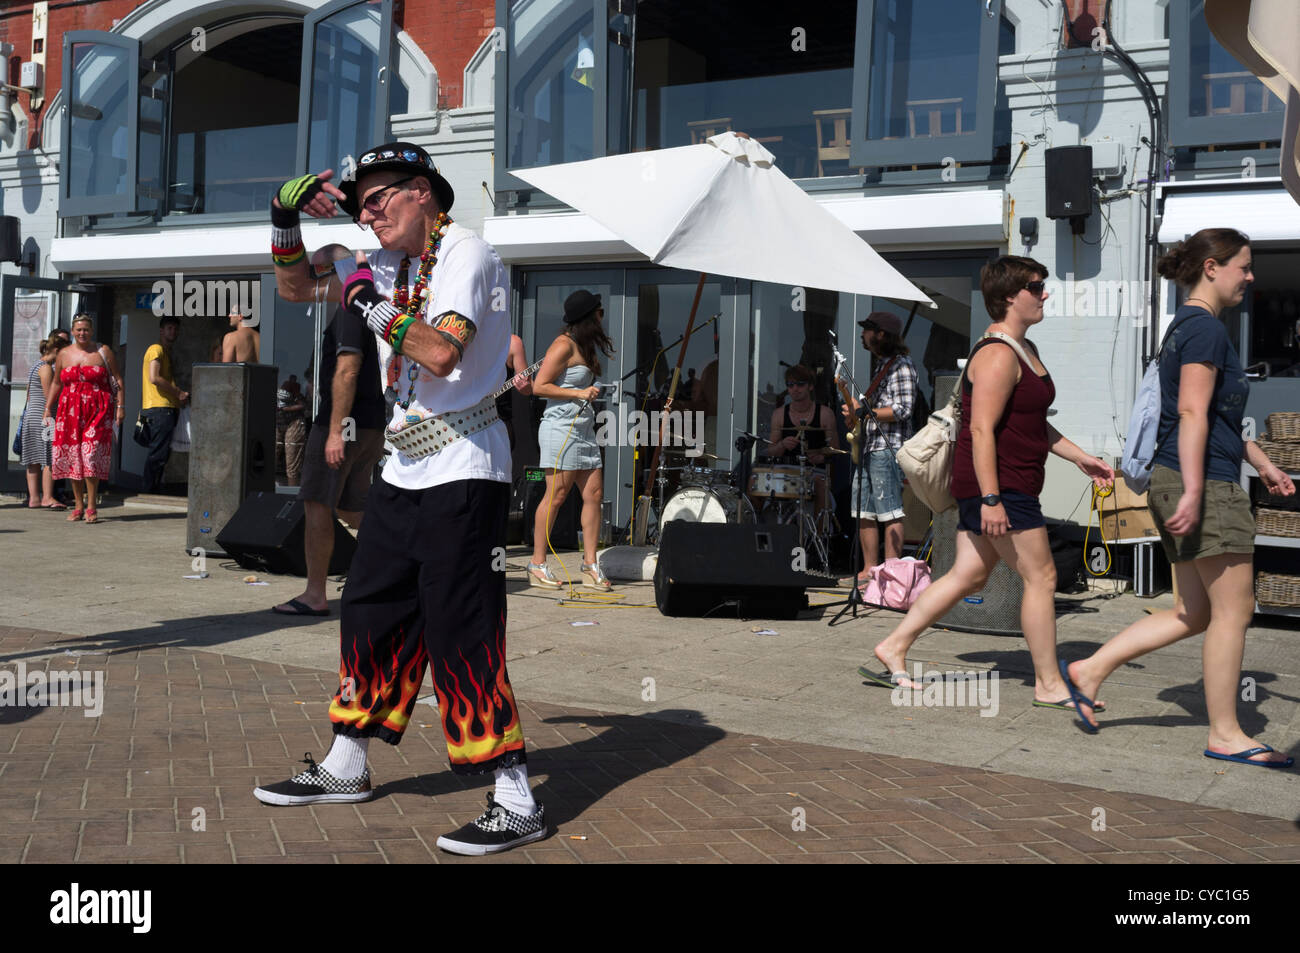 Pete Disco,un personnage bien connu sur le front de mer animé de Brighton à danses musique live Banque D'Images